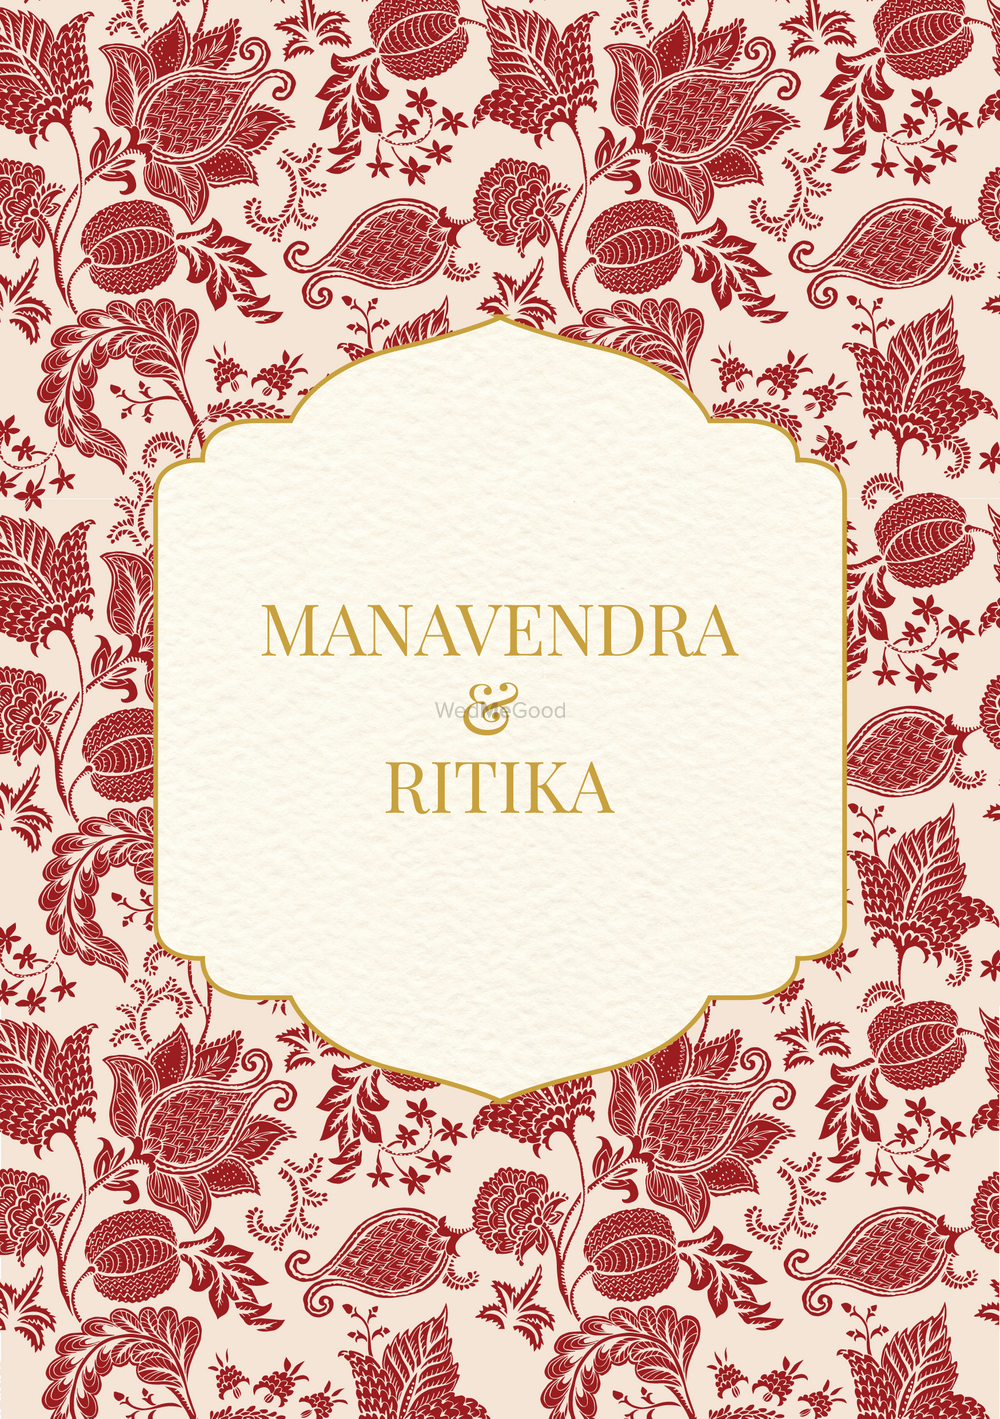 Photo From Manavendra & Ritika - By Cardkhana